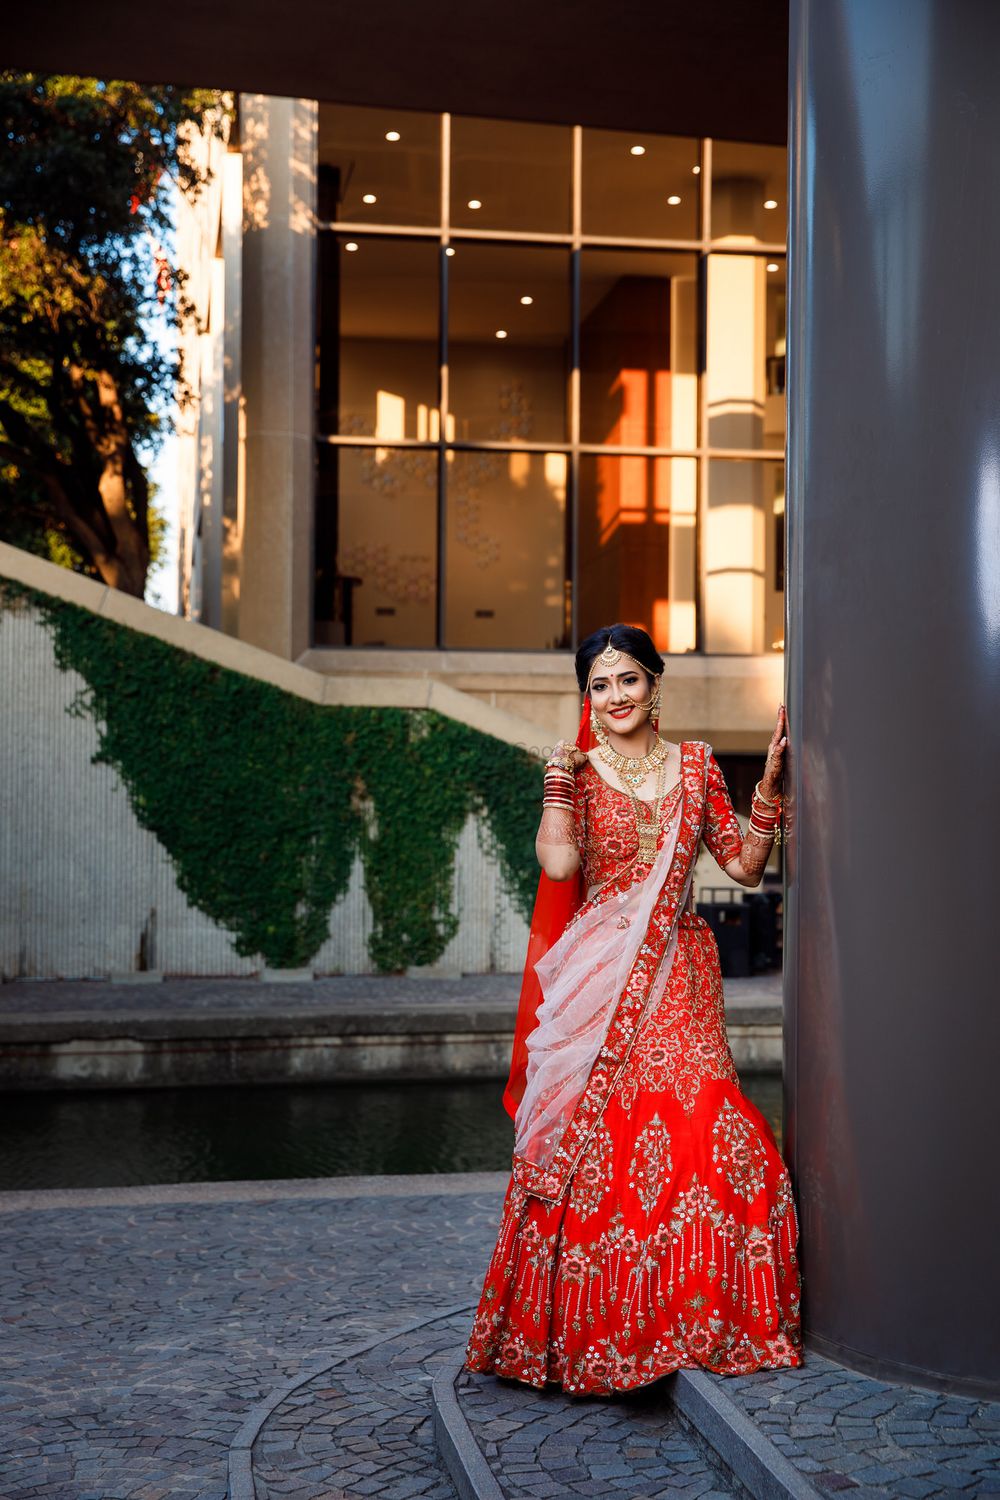 Photo From weddings - Pooja & Adarsh - By Jagat Studio